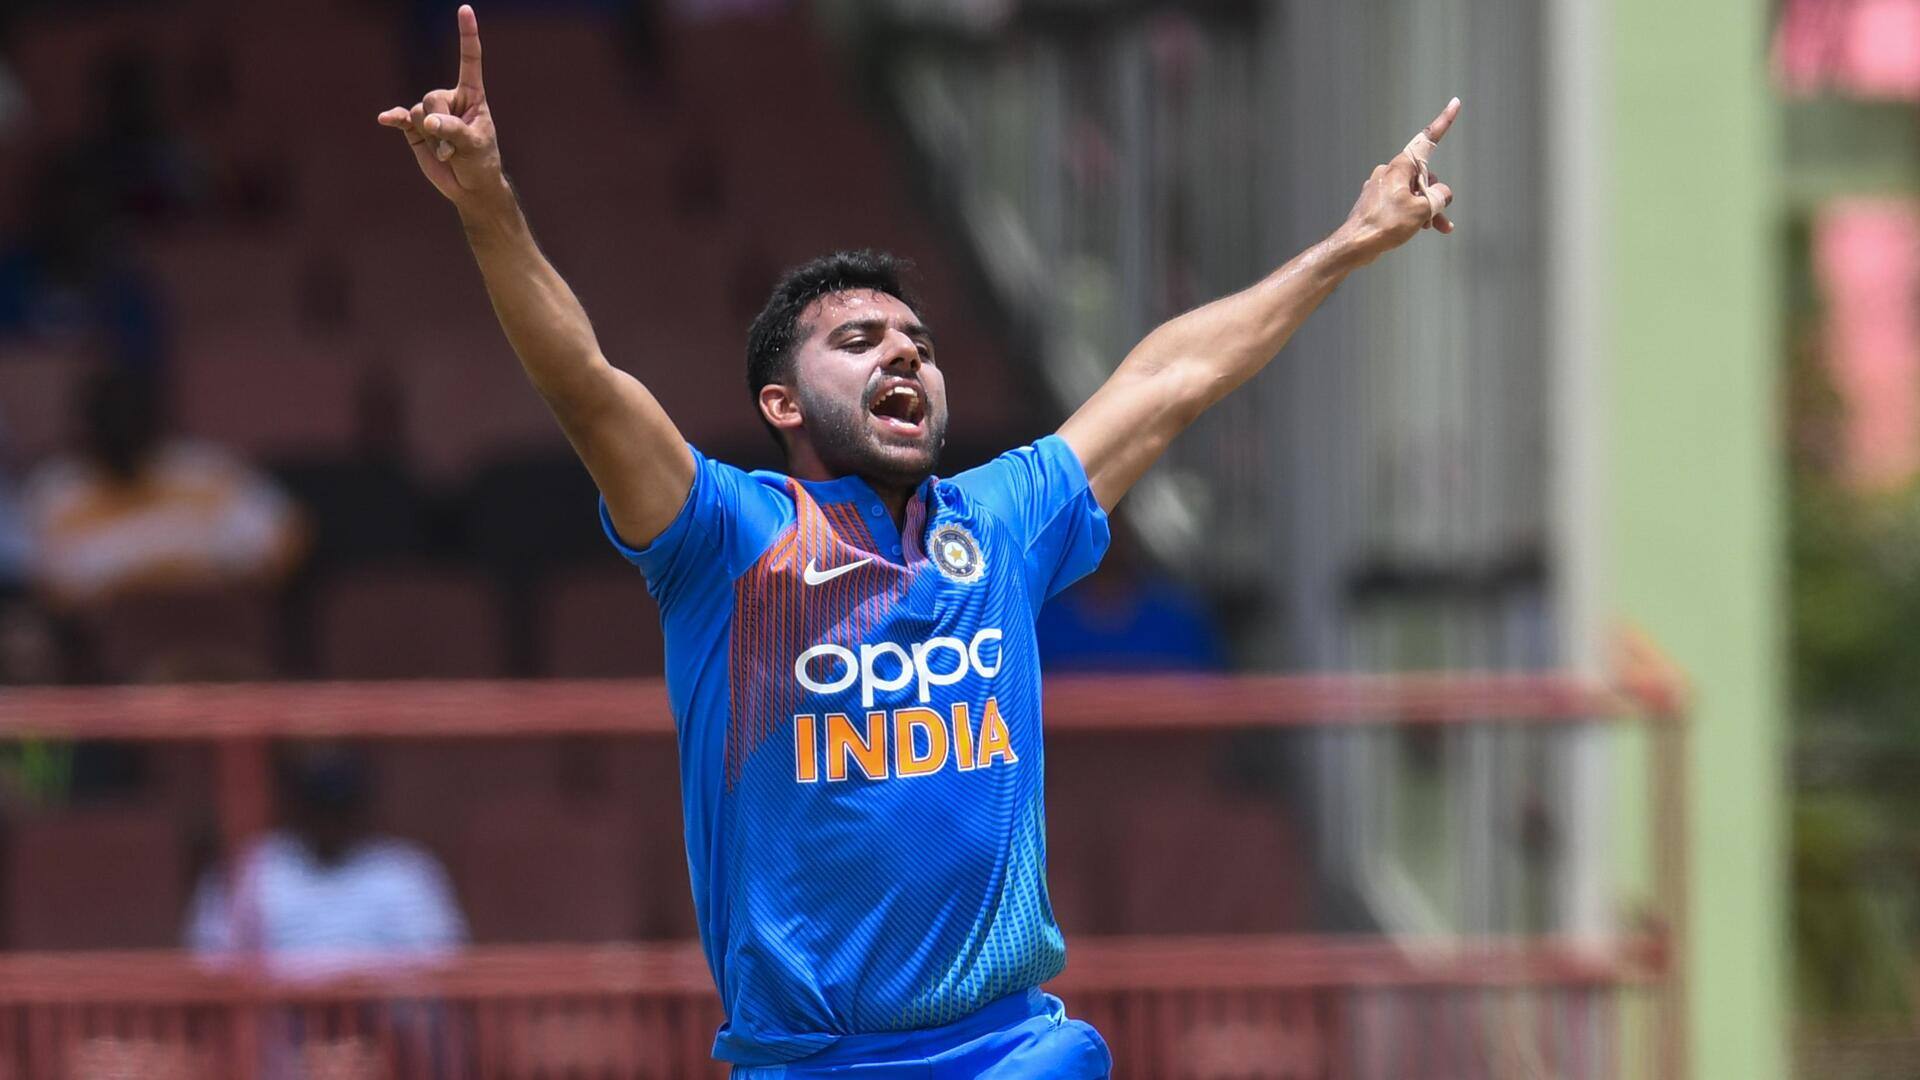 भारत बनाम ऑस्ट्रेलिया: दीपक चाहर बची हुई टी-20 सीरीज के लिए टीम में शामिल, जानिए आंकड़े 